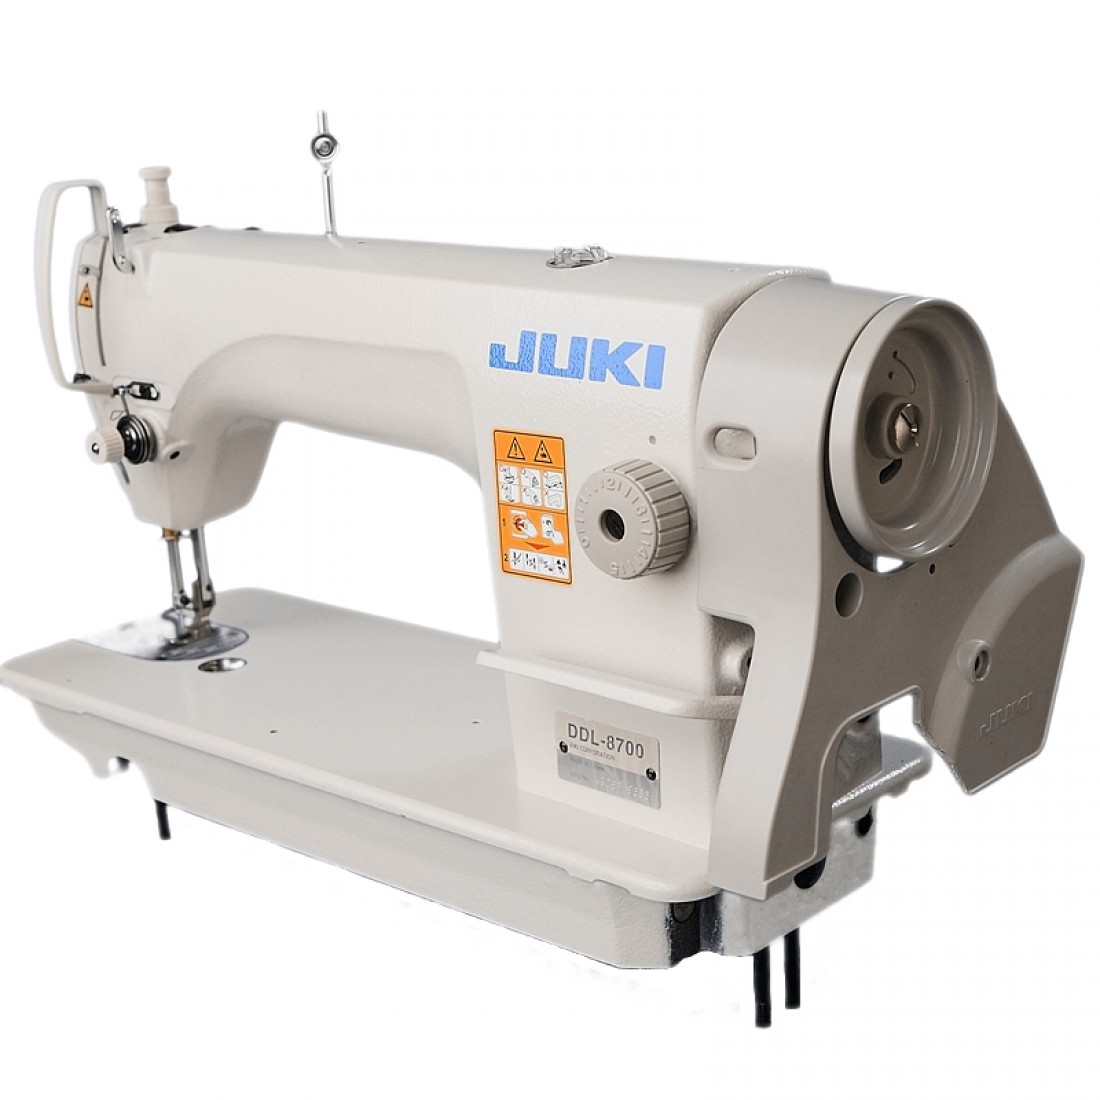 Промышленная швейная машинка juki. Промышленная швейная машина Juki DDL-8700. Швейная машинка Джуки 8700. Швейная машинка Juki DDL 8700. Машинка швейная Juki 8700.